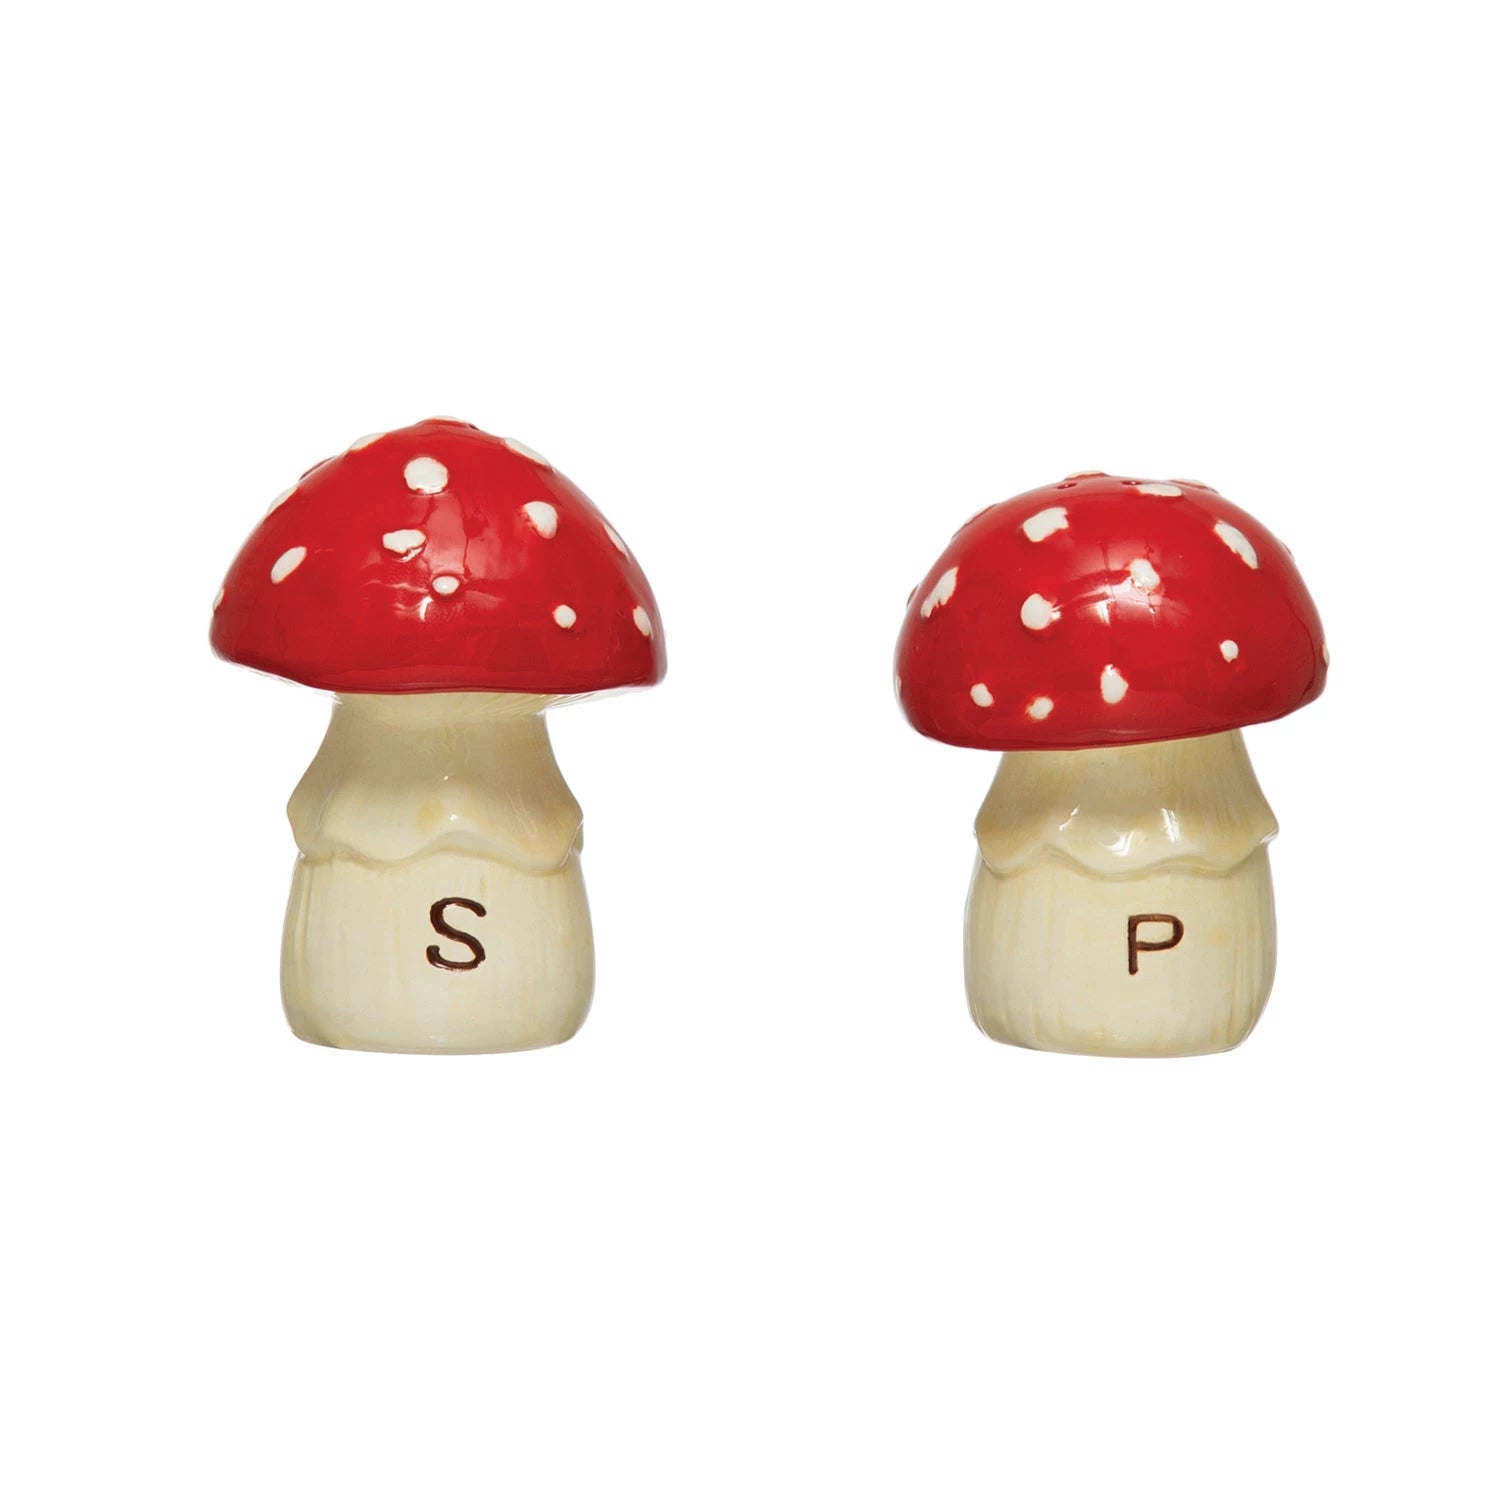 Mini Mushroom Salt and Pepper Shakers